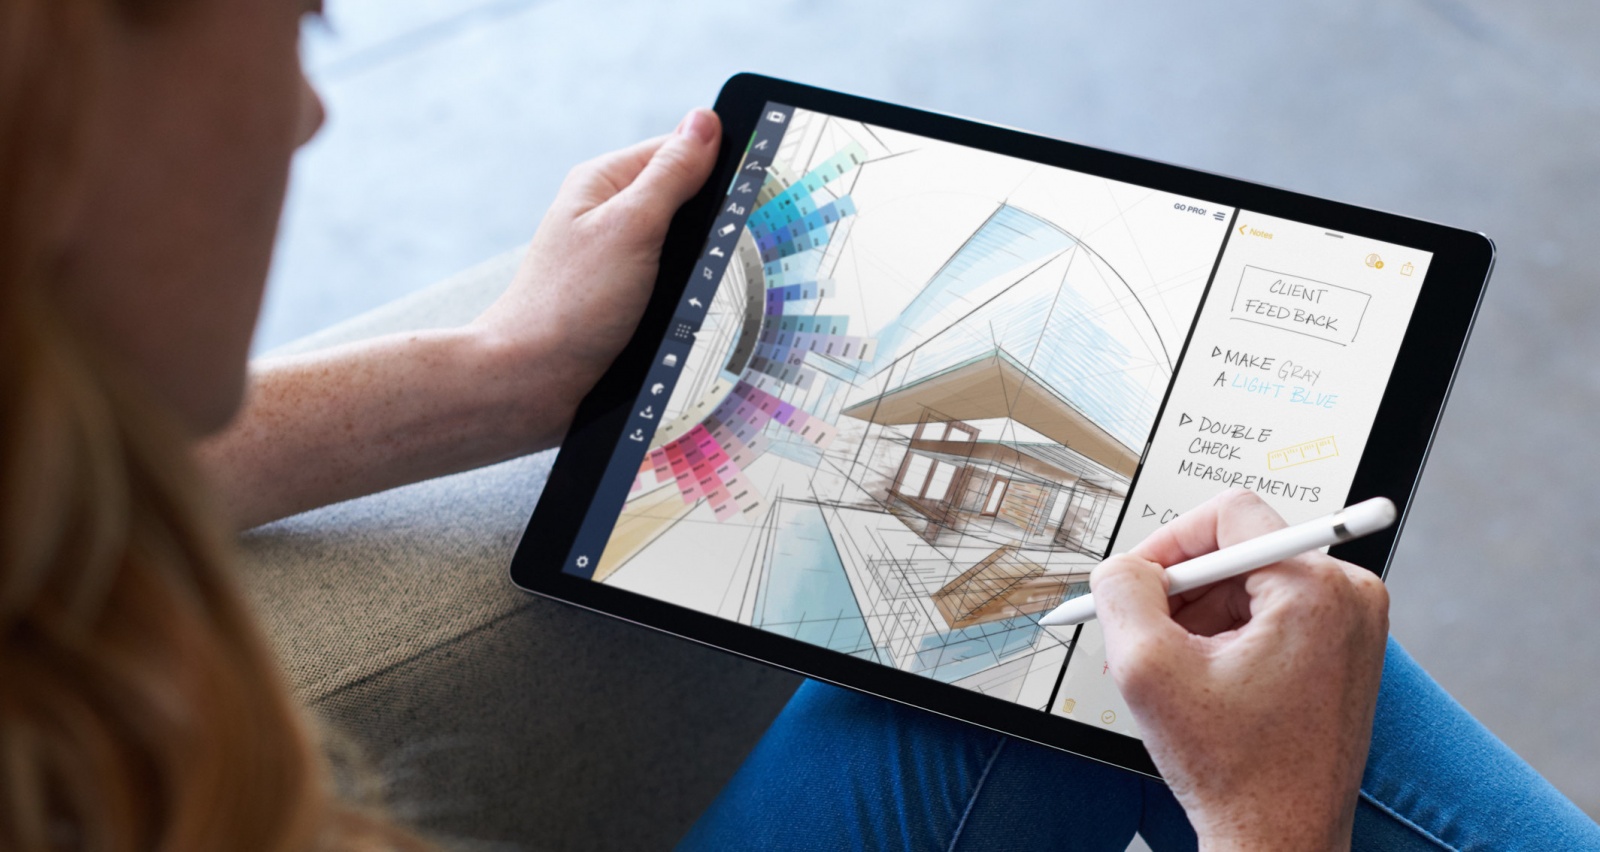 Adobe планирует выпустить полноценную версию Photoshop для iPad